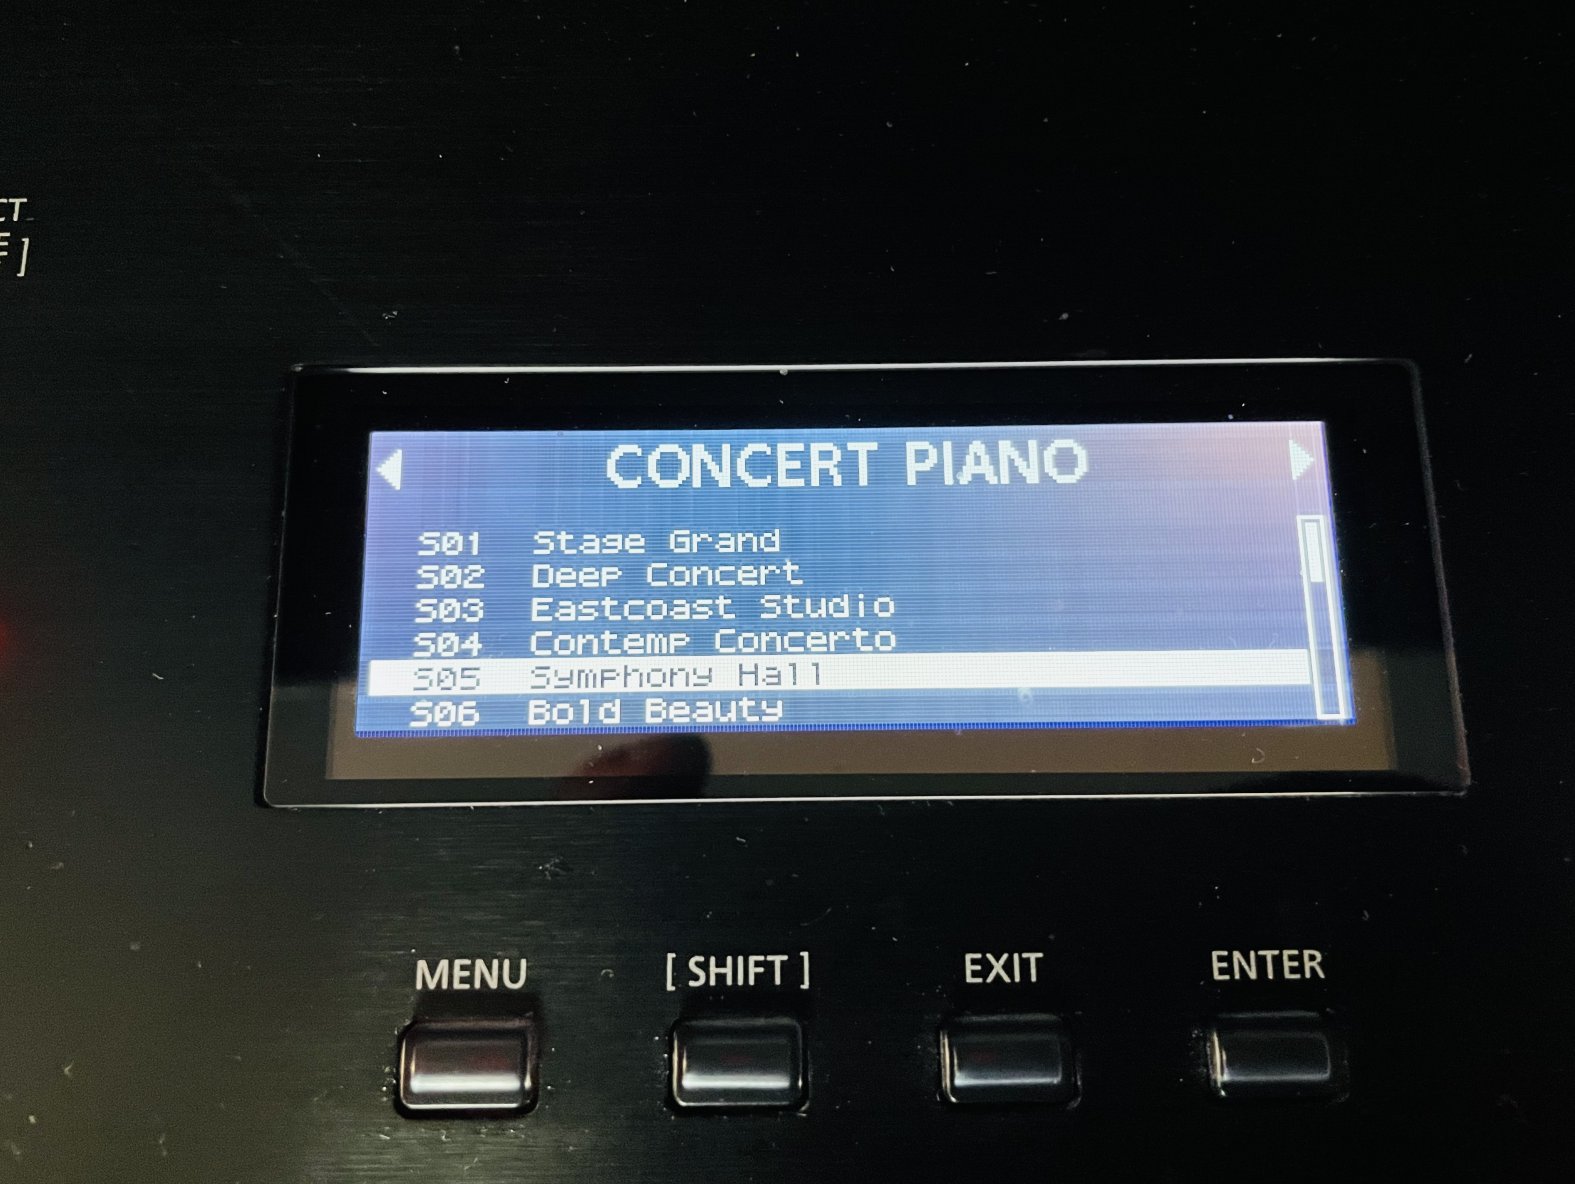 Piano numérique synthé 88 touches Roland RD-2000 n°Z016677, alim